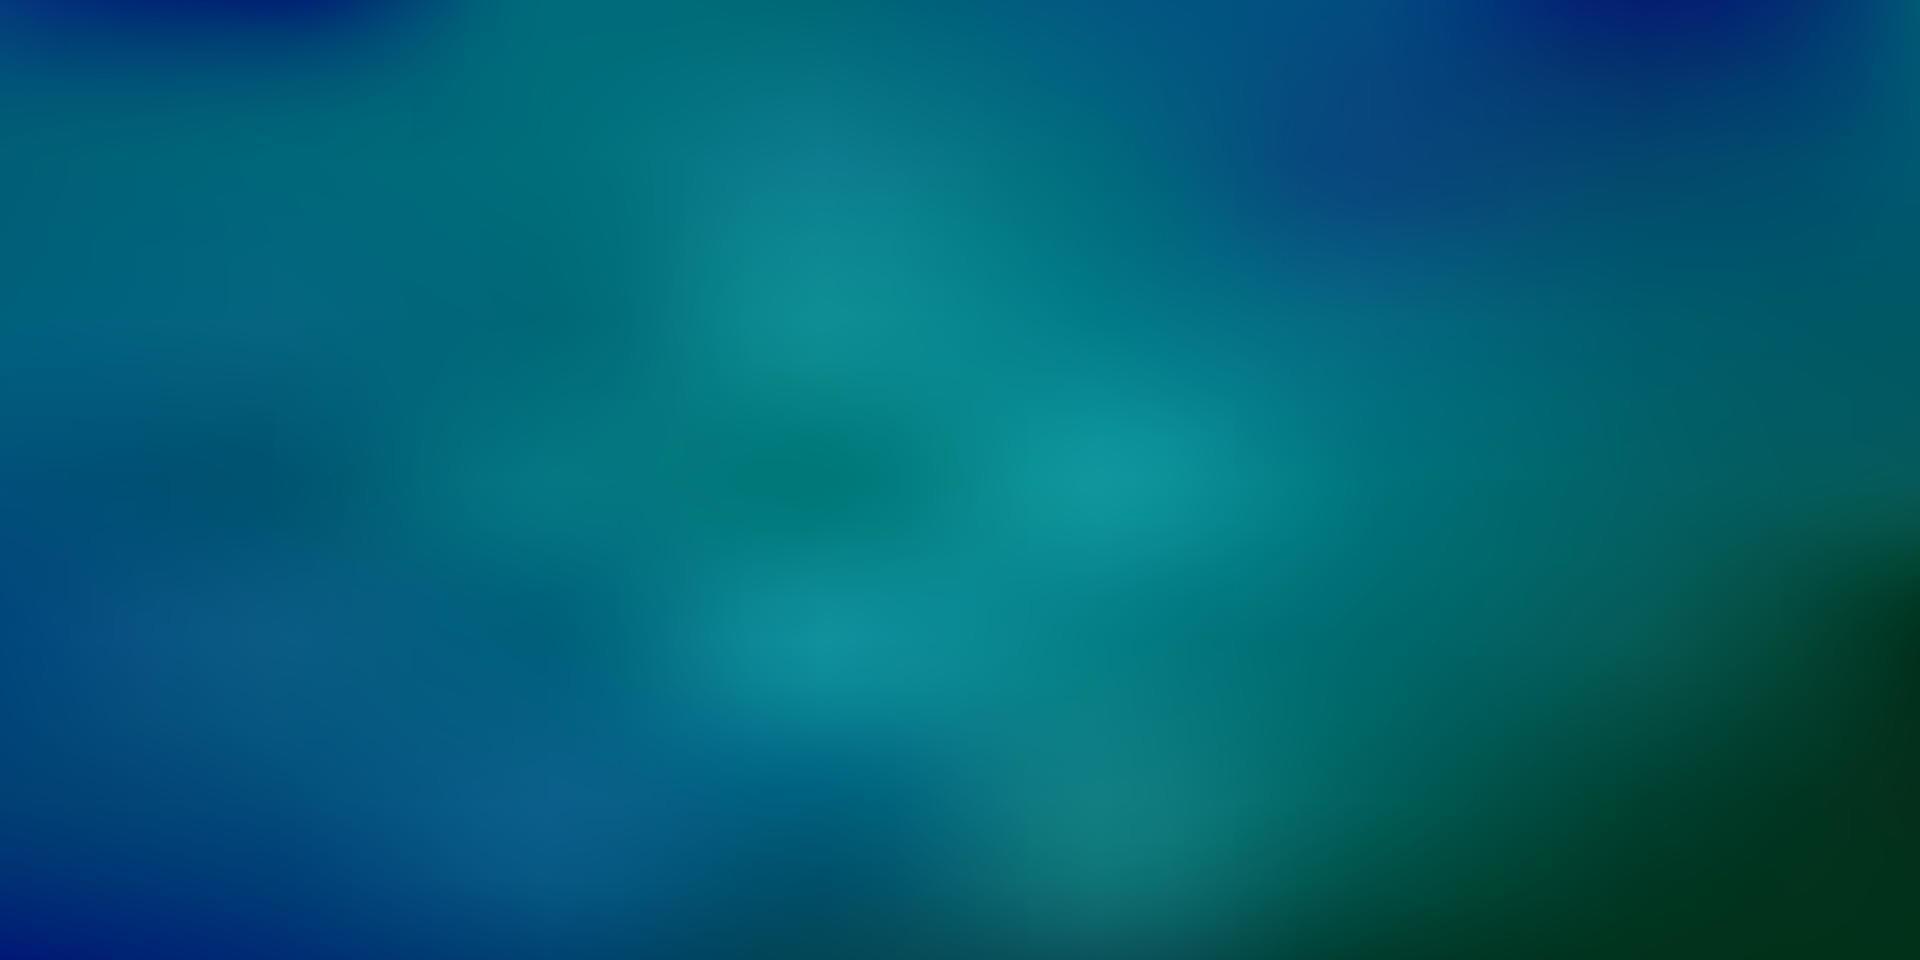 Light blue, green vector gradient blur template.